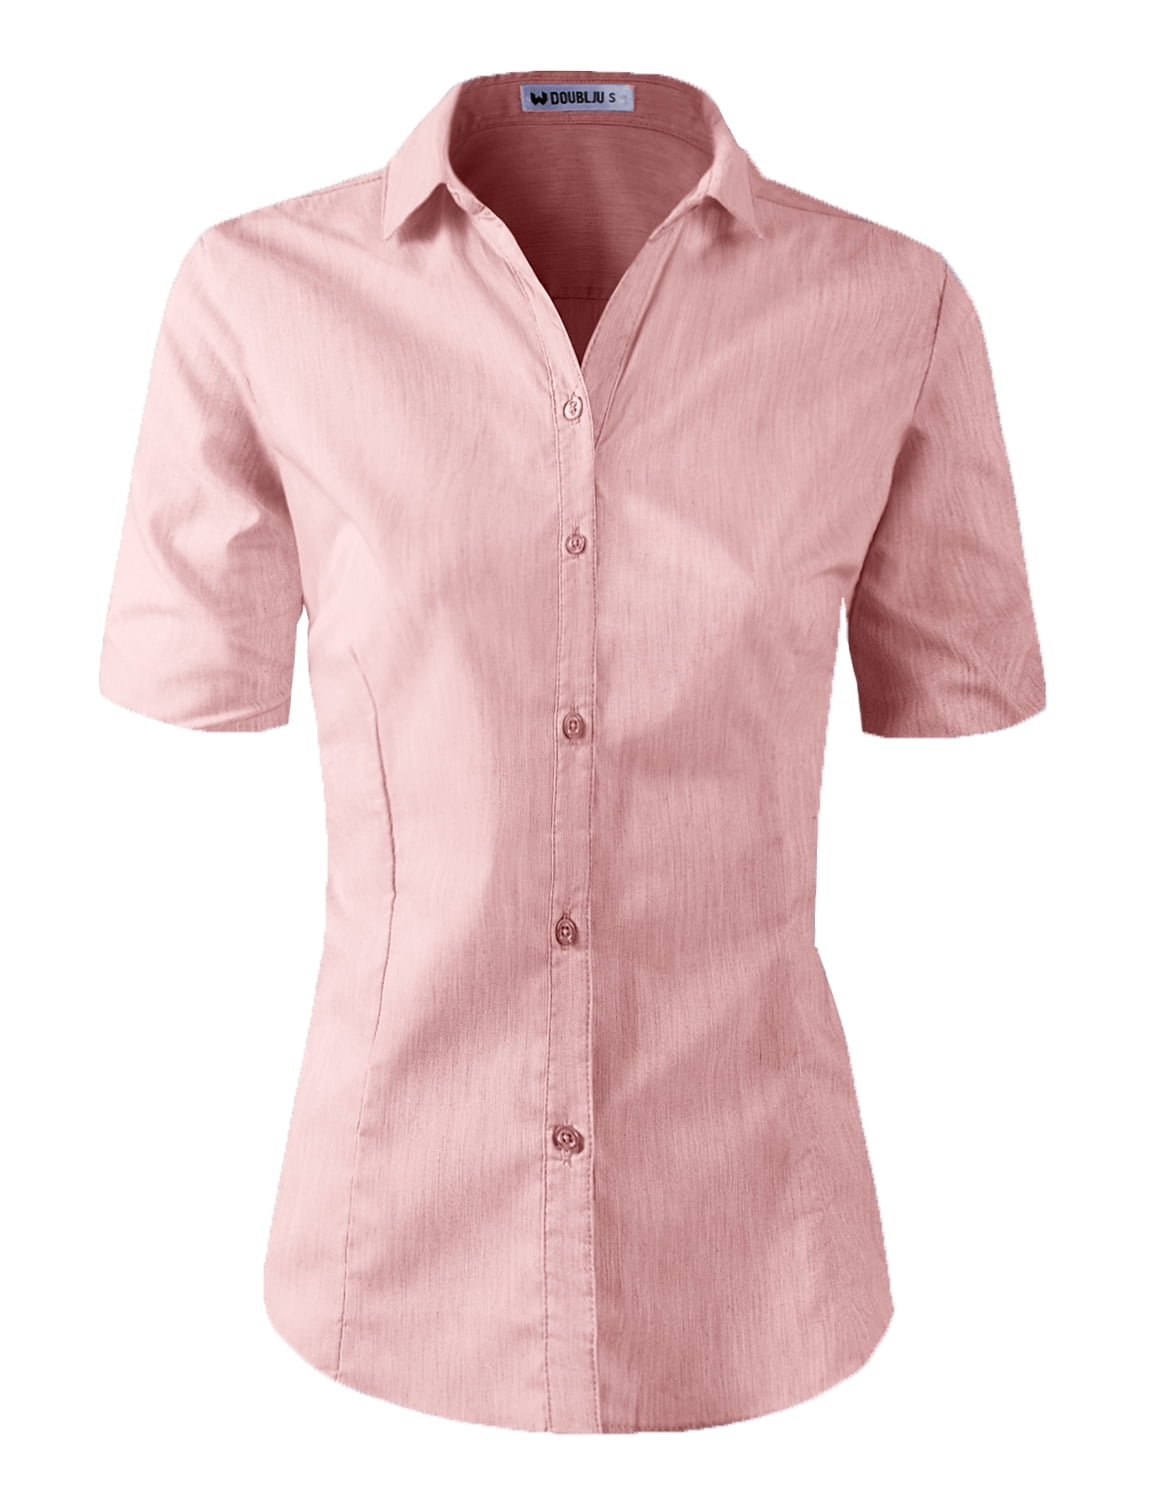 women's plus size button down dress shirts